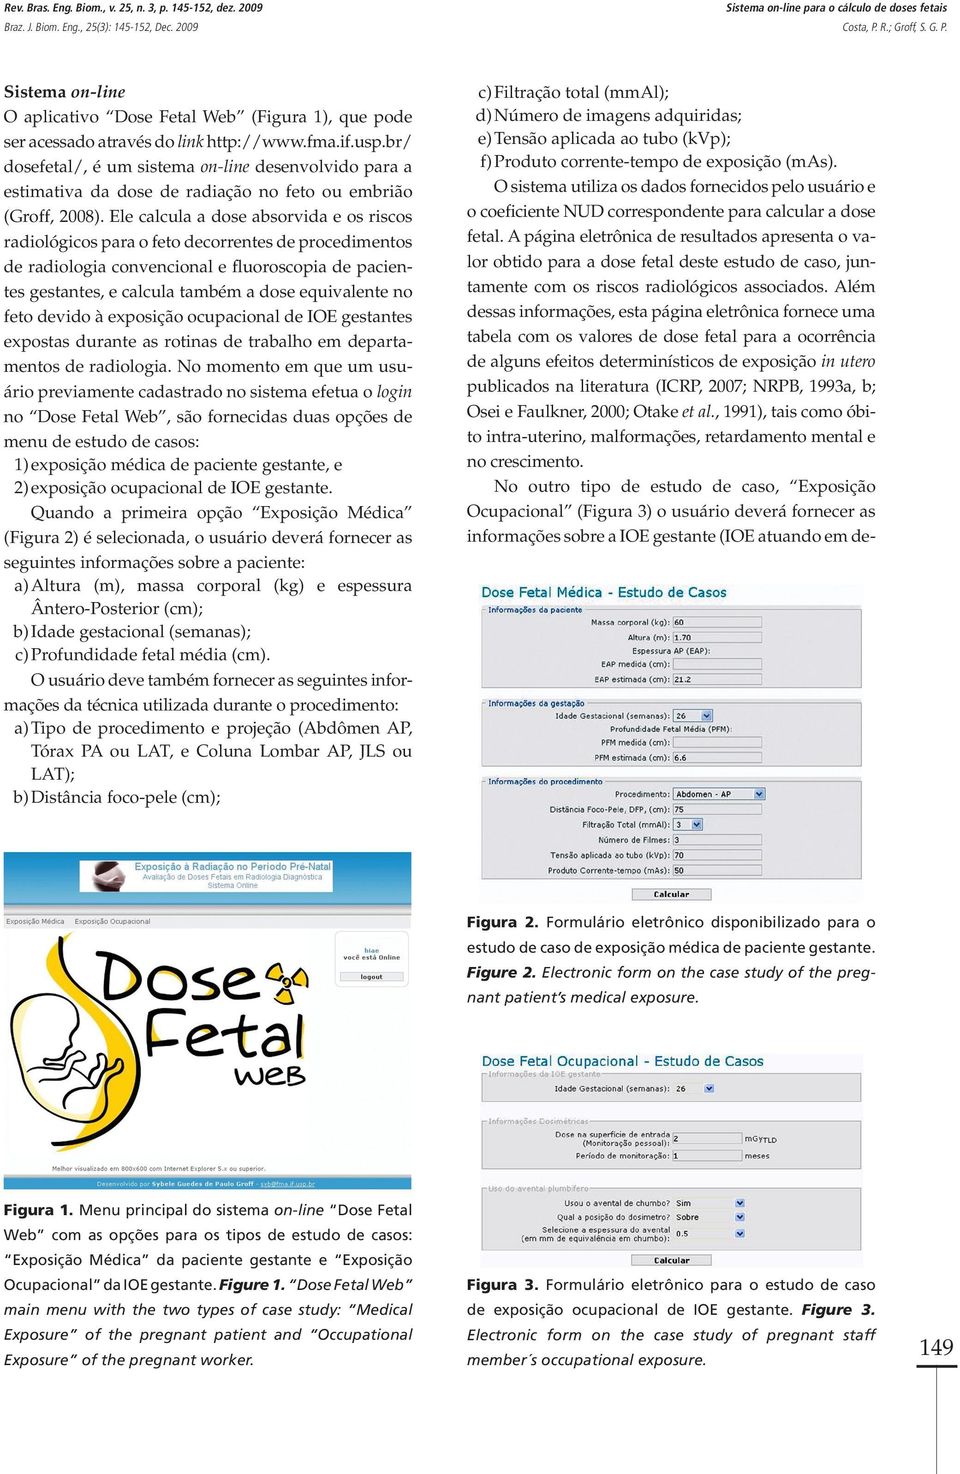 br/ dosefetal/, é um sistema on-line desenvolvido para a estimativa da dose de radiação no feto ou embrião (Groff, 2008).